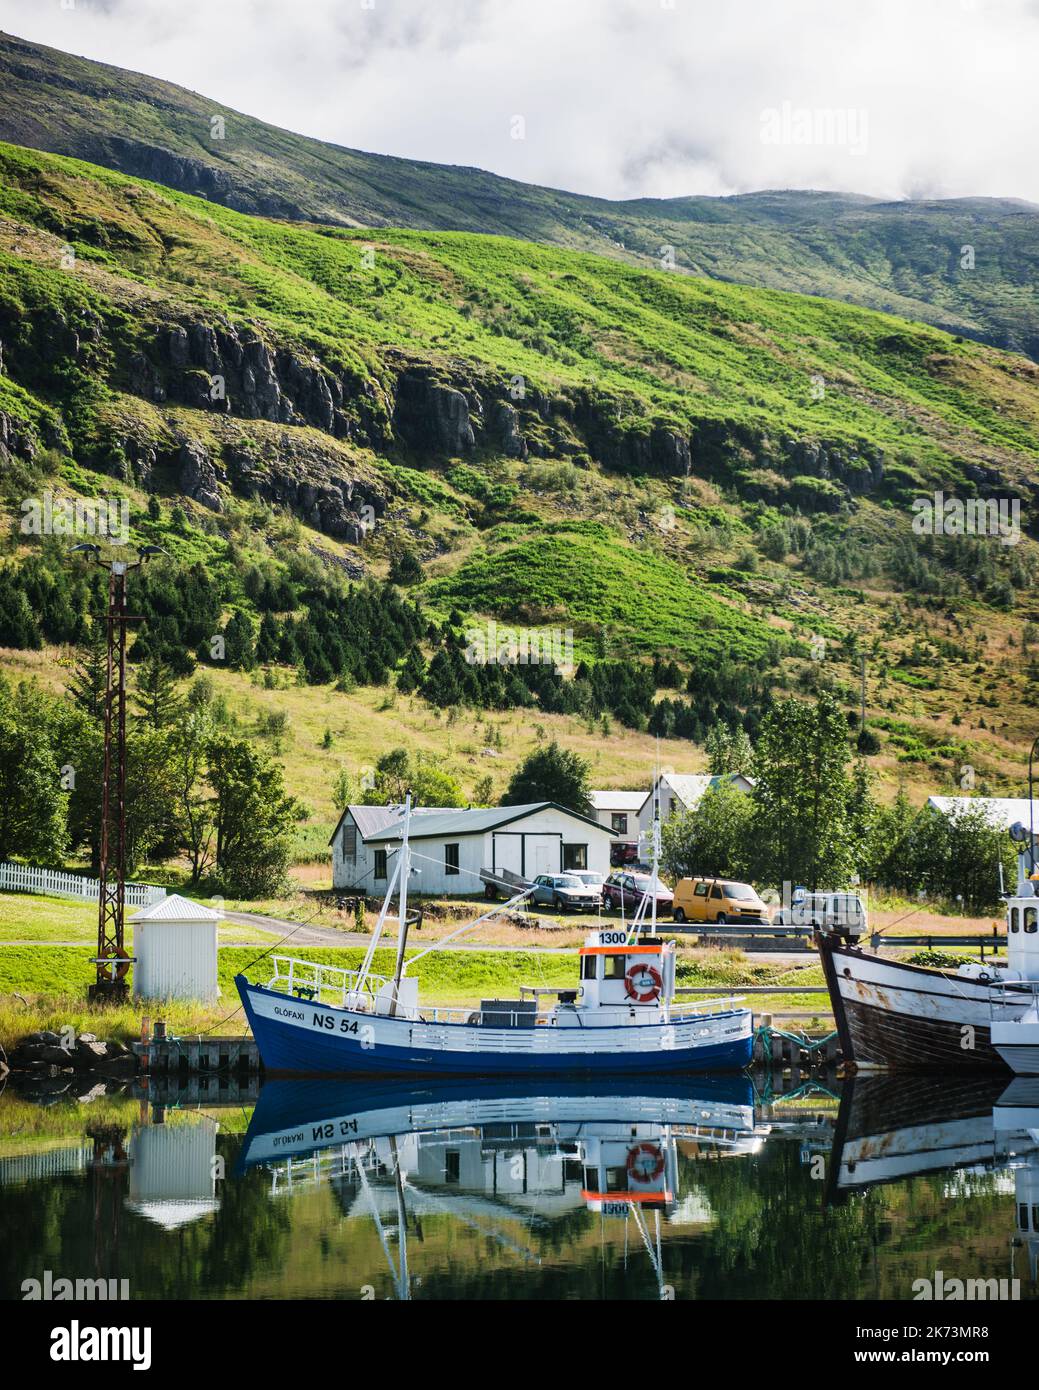 Bateaux sur le lac dans le village de Seydisfjordur, seyðisfjörður, Islande, Scandinavie, Europe Banque D'Images